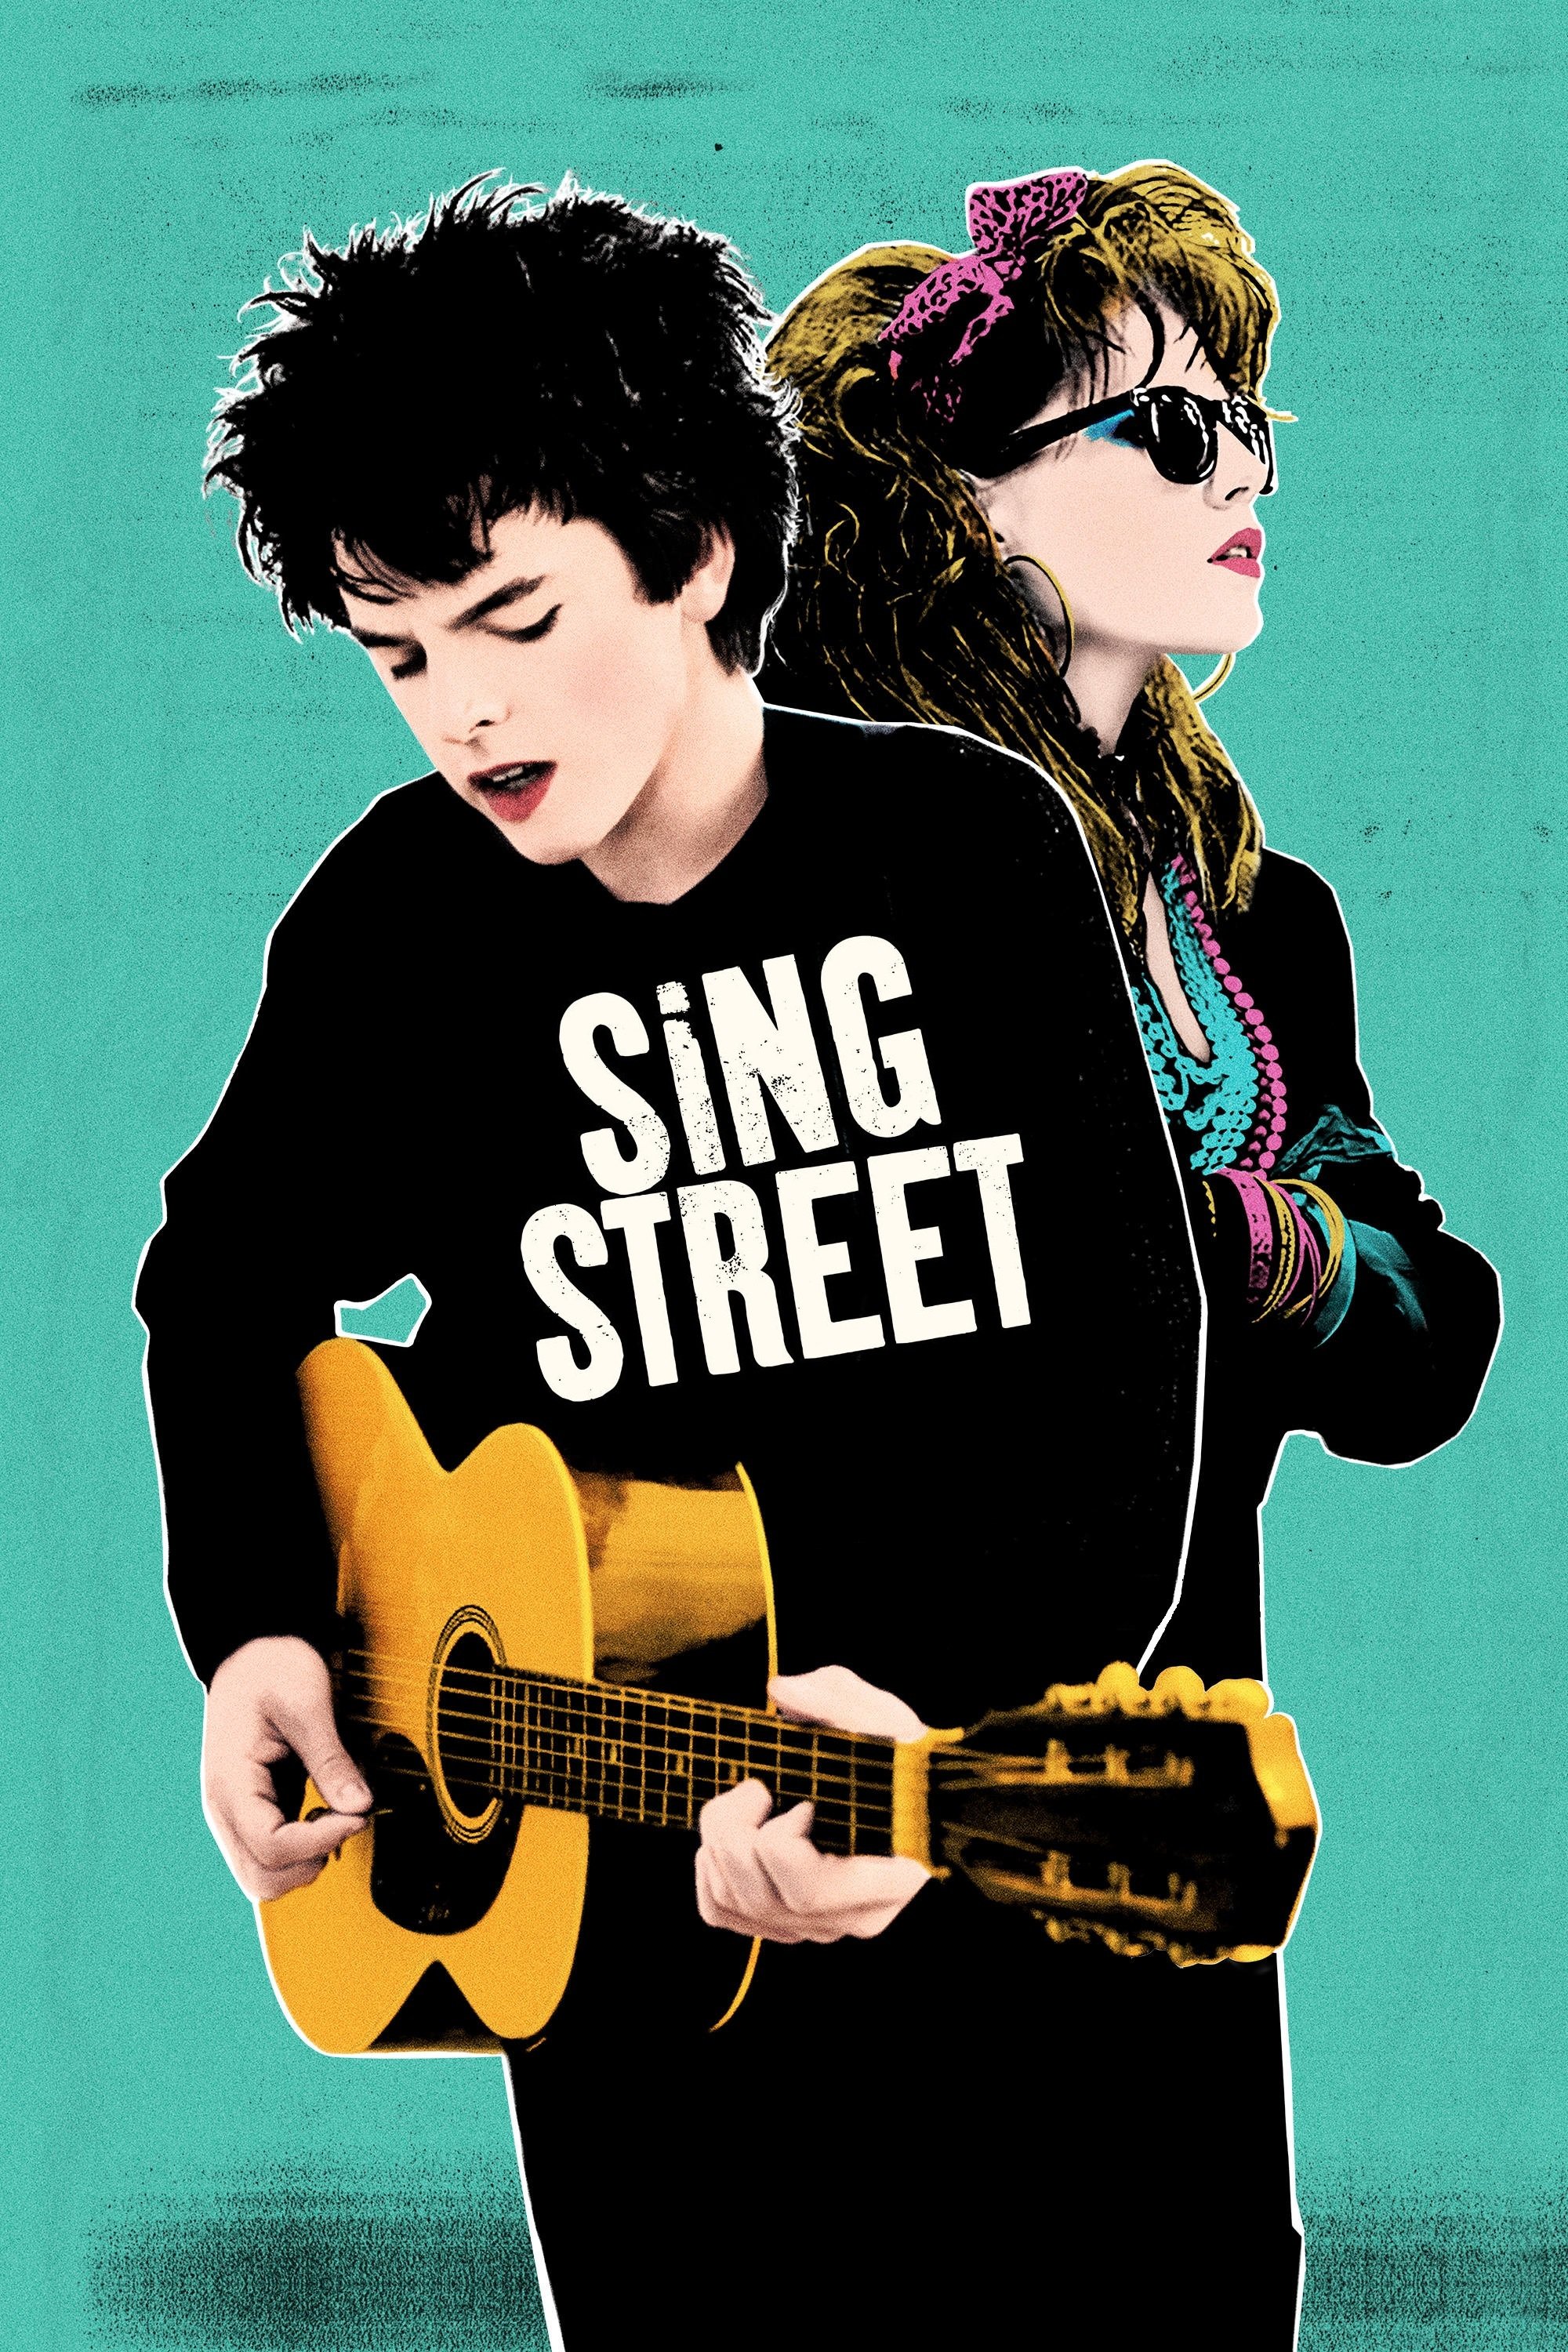 Plakat von "Sing Street"